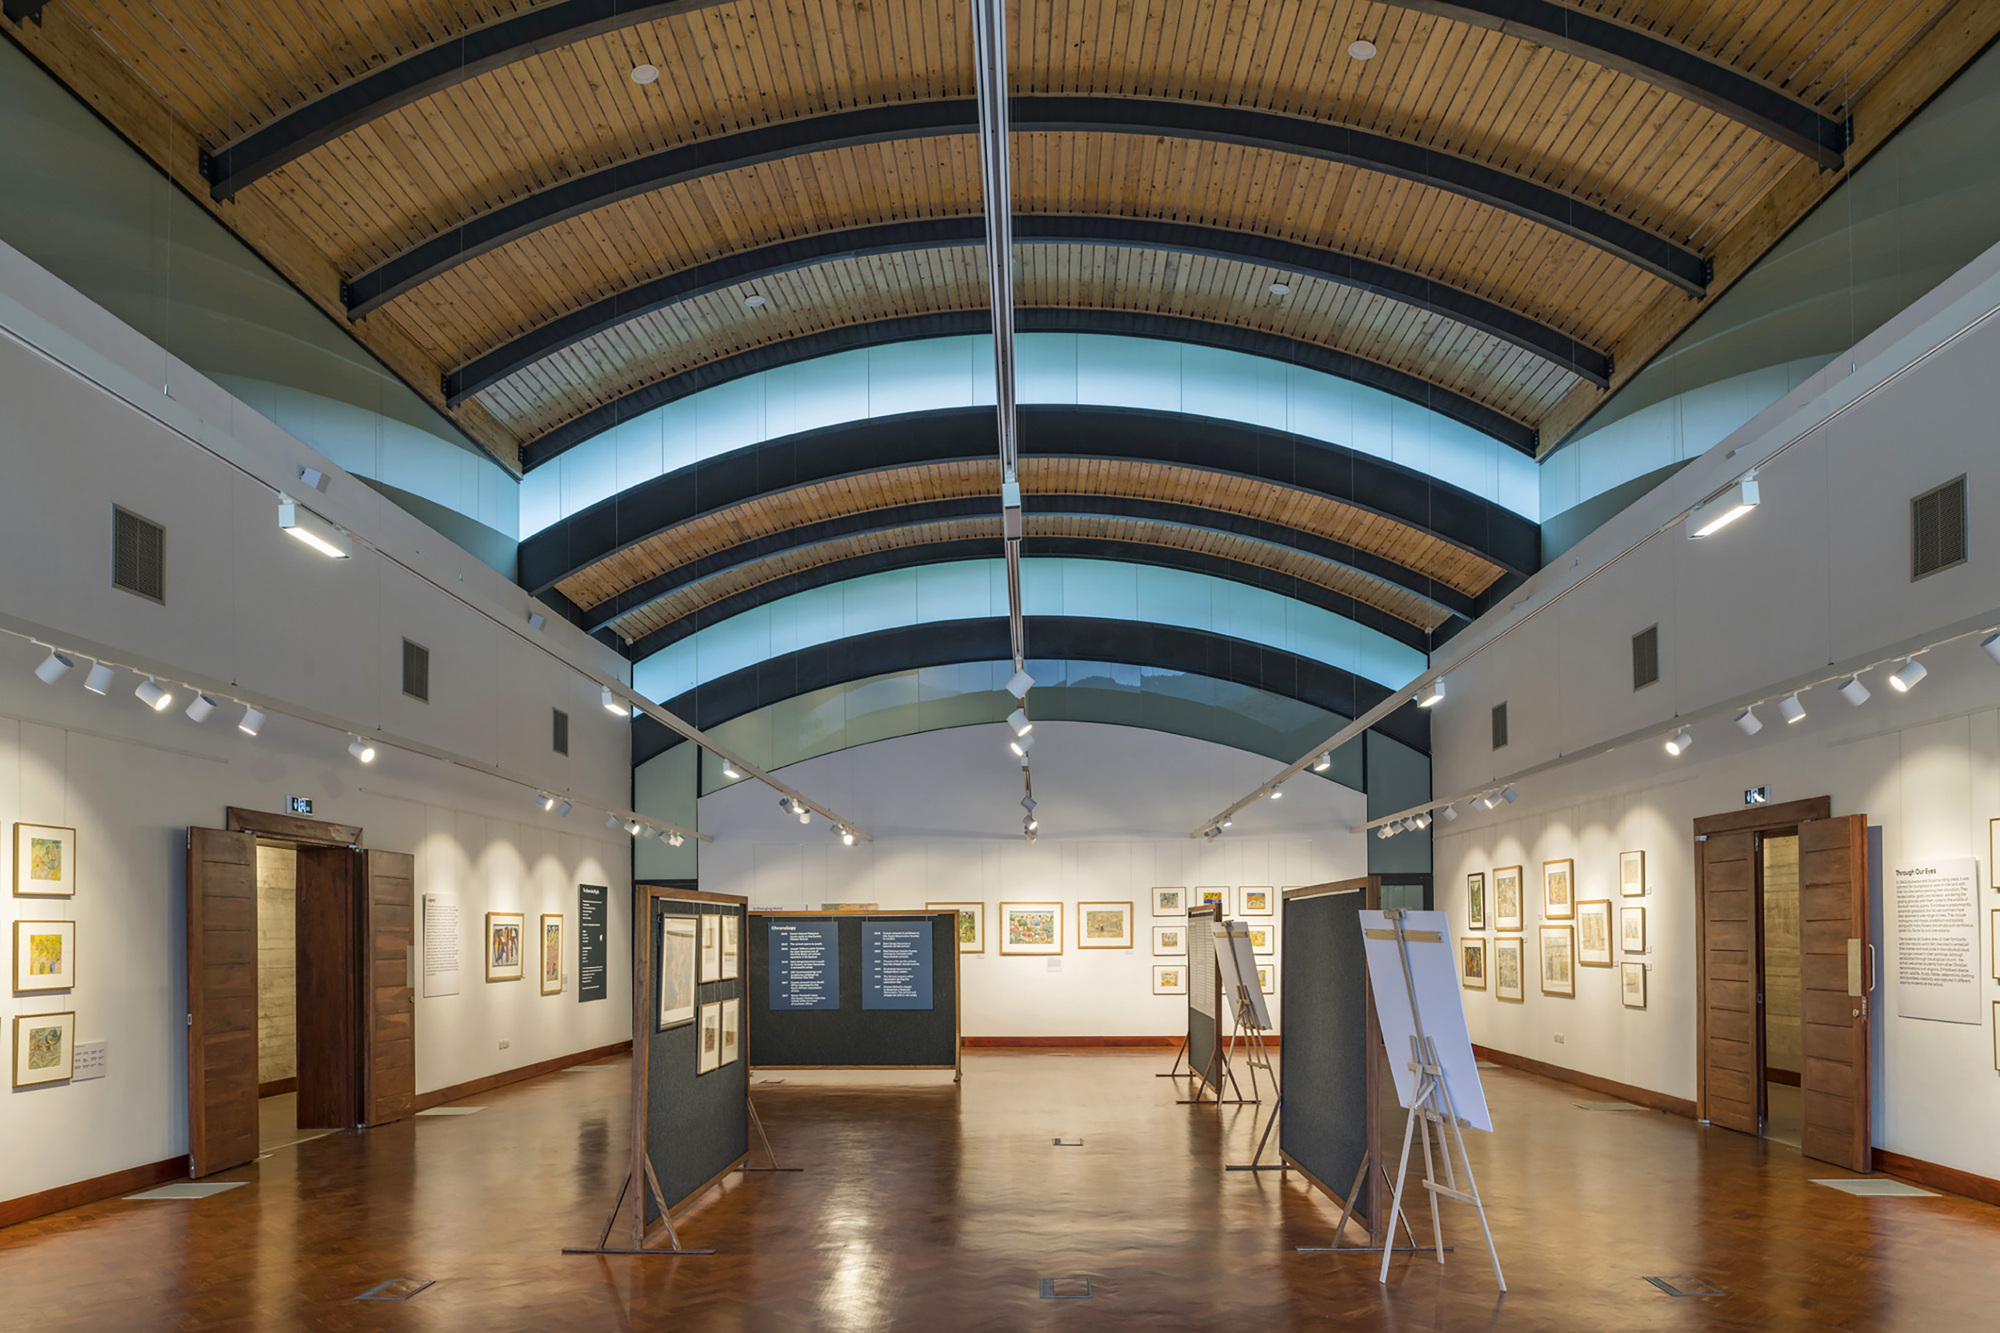 图片[3]|Aberfoyle 旅馆拱顶画廊 / Architectural & Planning Studio|ART-Arrakis | 建筑室内设计的创新与灵感